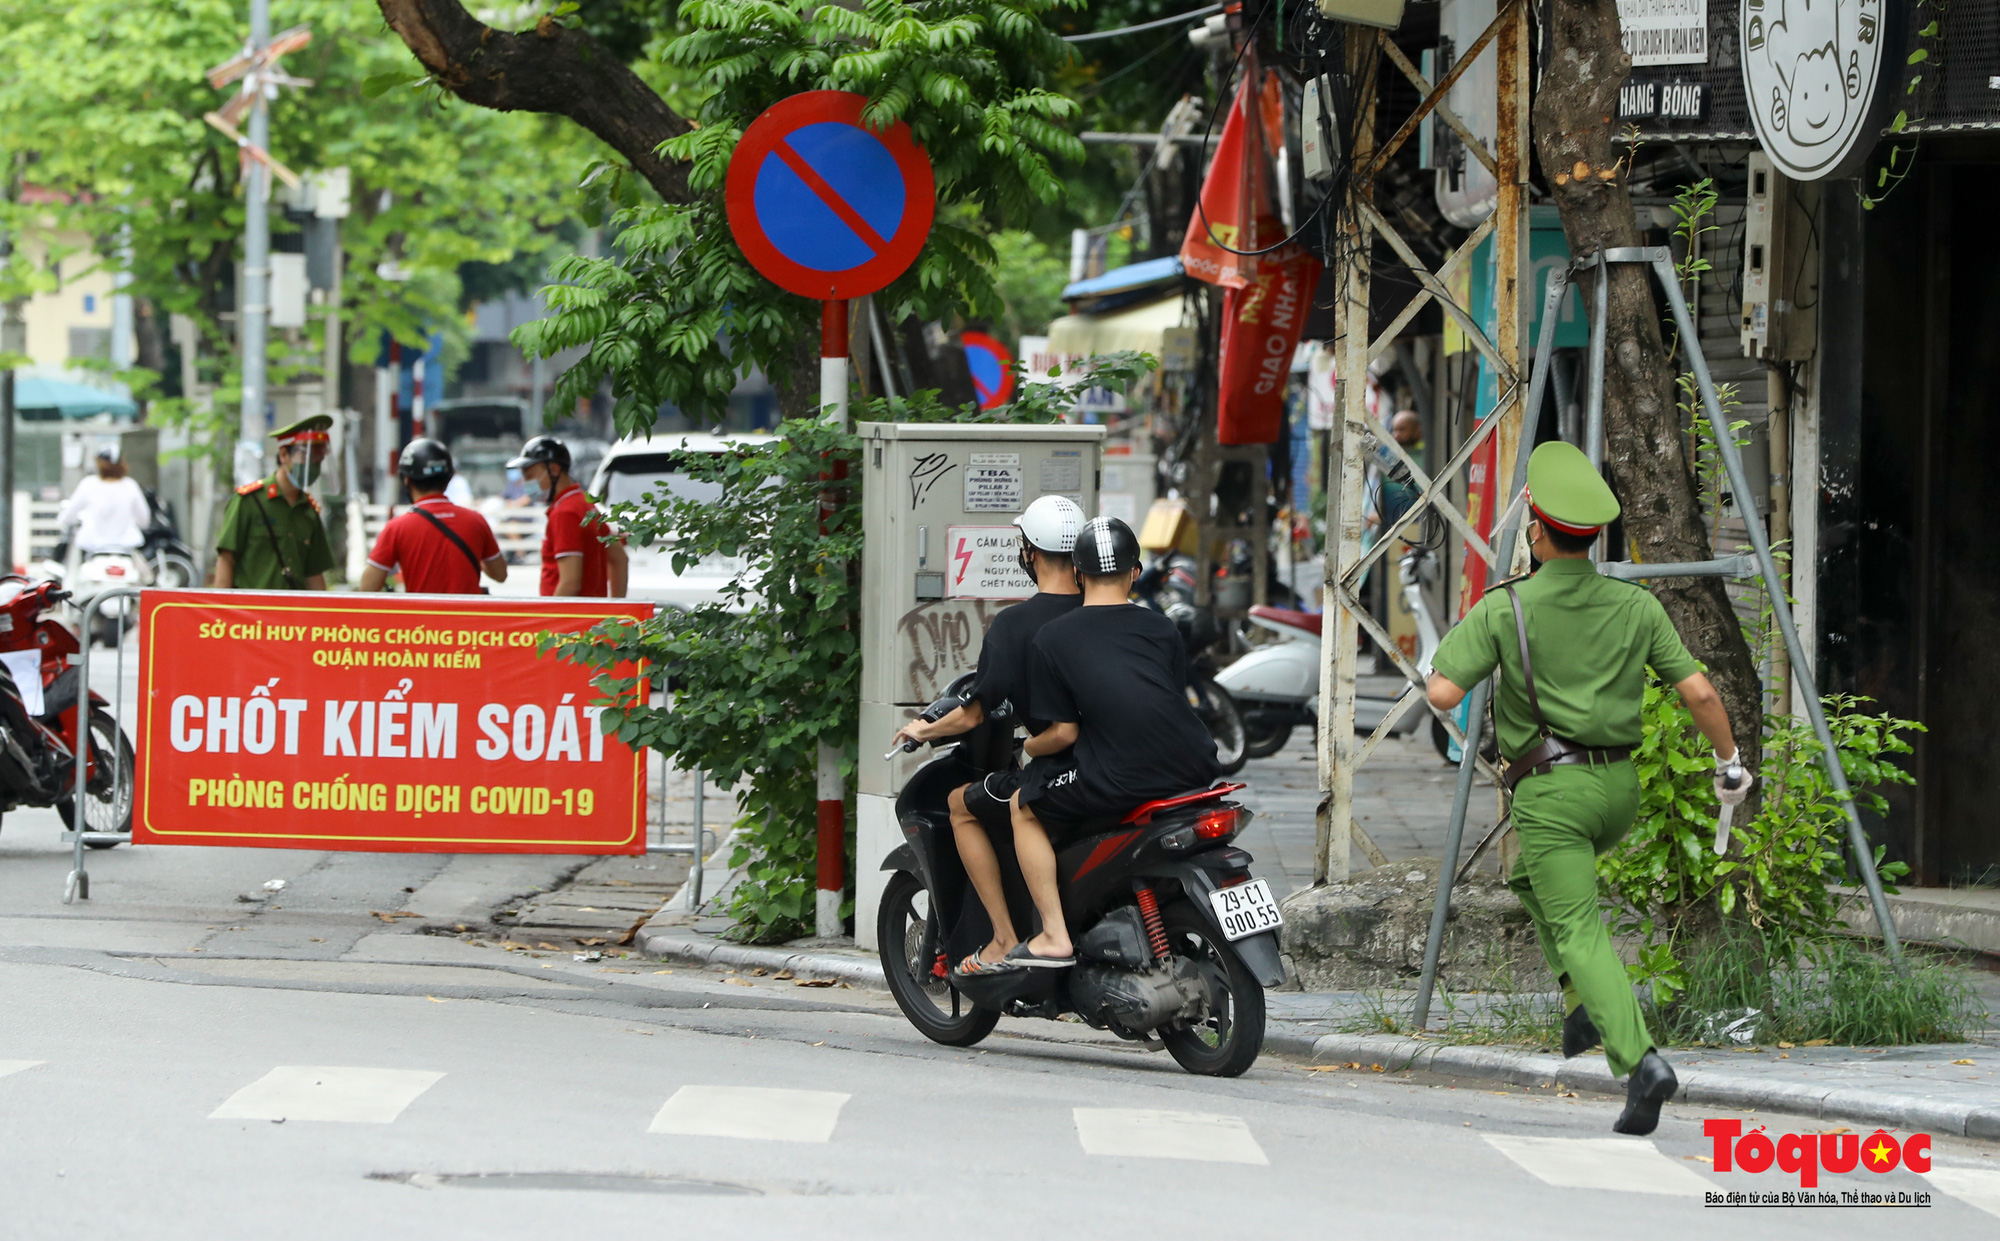 Công an quận Hoàn Kiếm triển khai tổ công tác đặc biệt kiểm soát giấy đi đường, nhiều trường hợp quay đầu bỏ chạy - Ảnh 12.